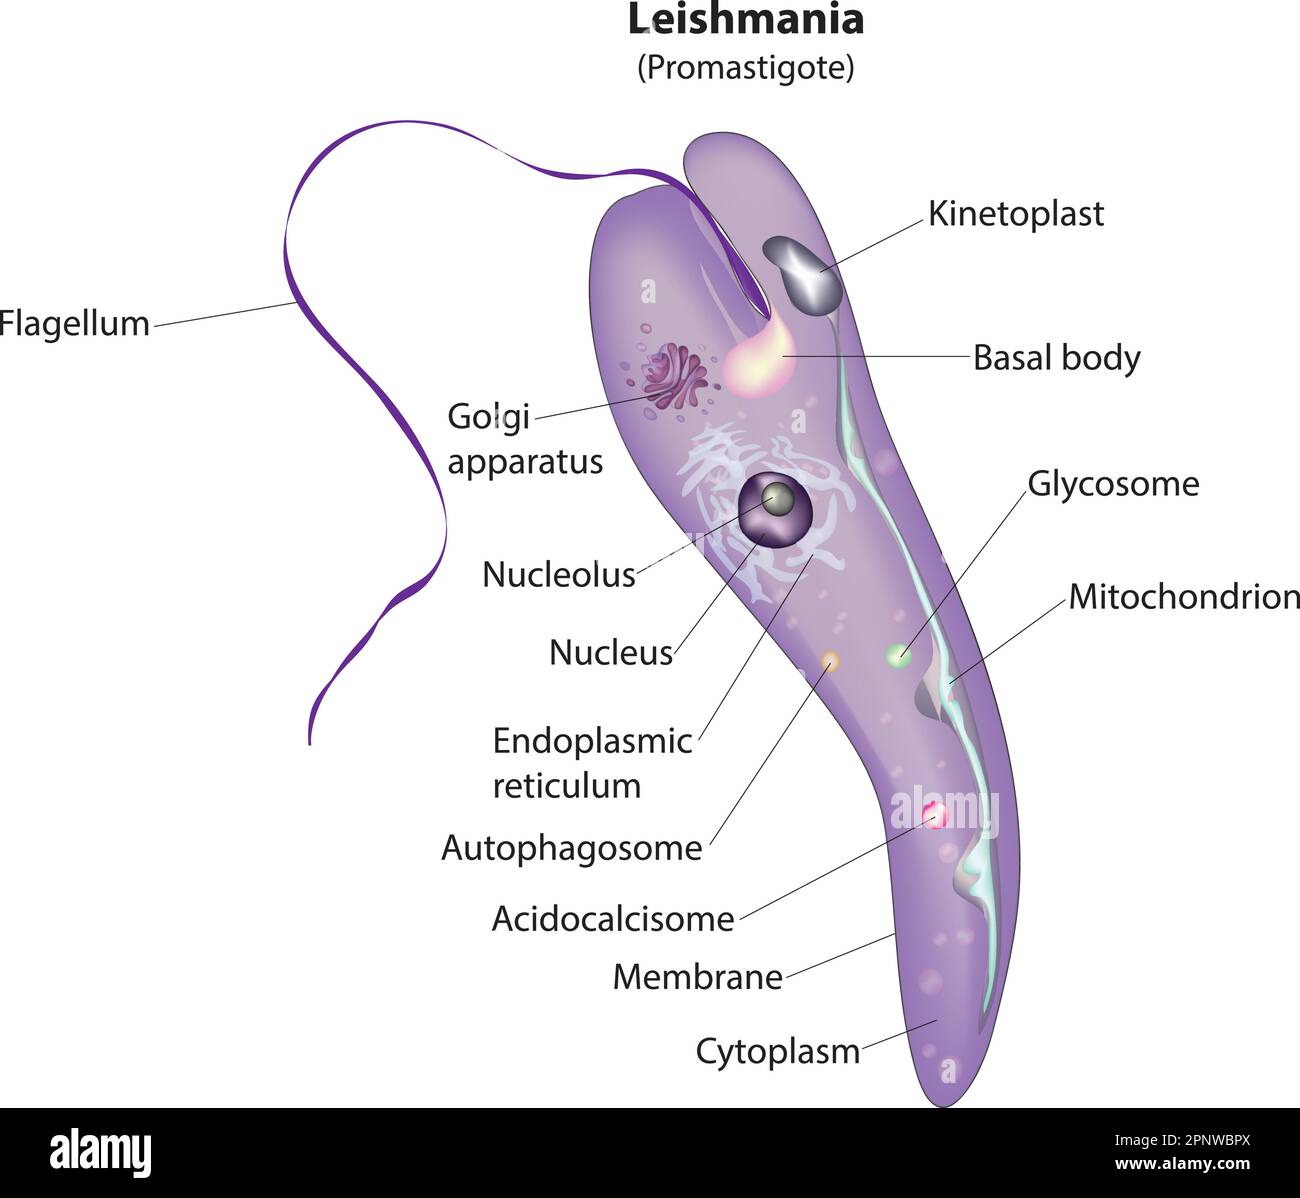 promastigotes stage of leishmania protozoa Stock Vector